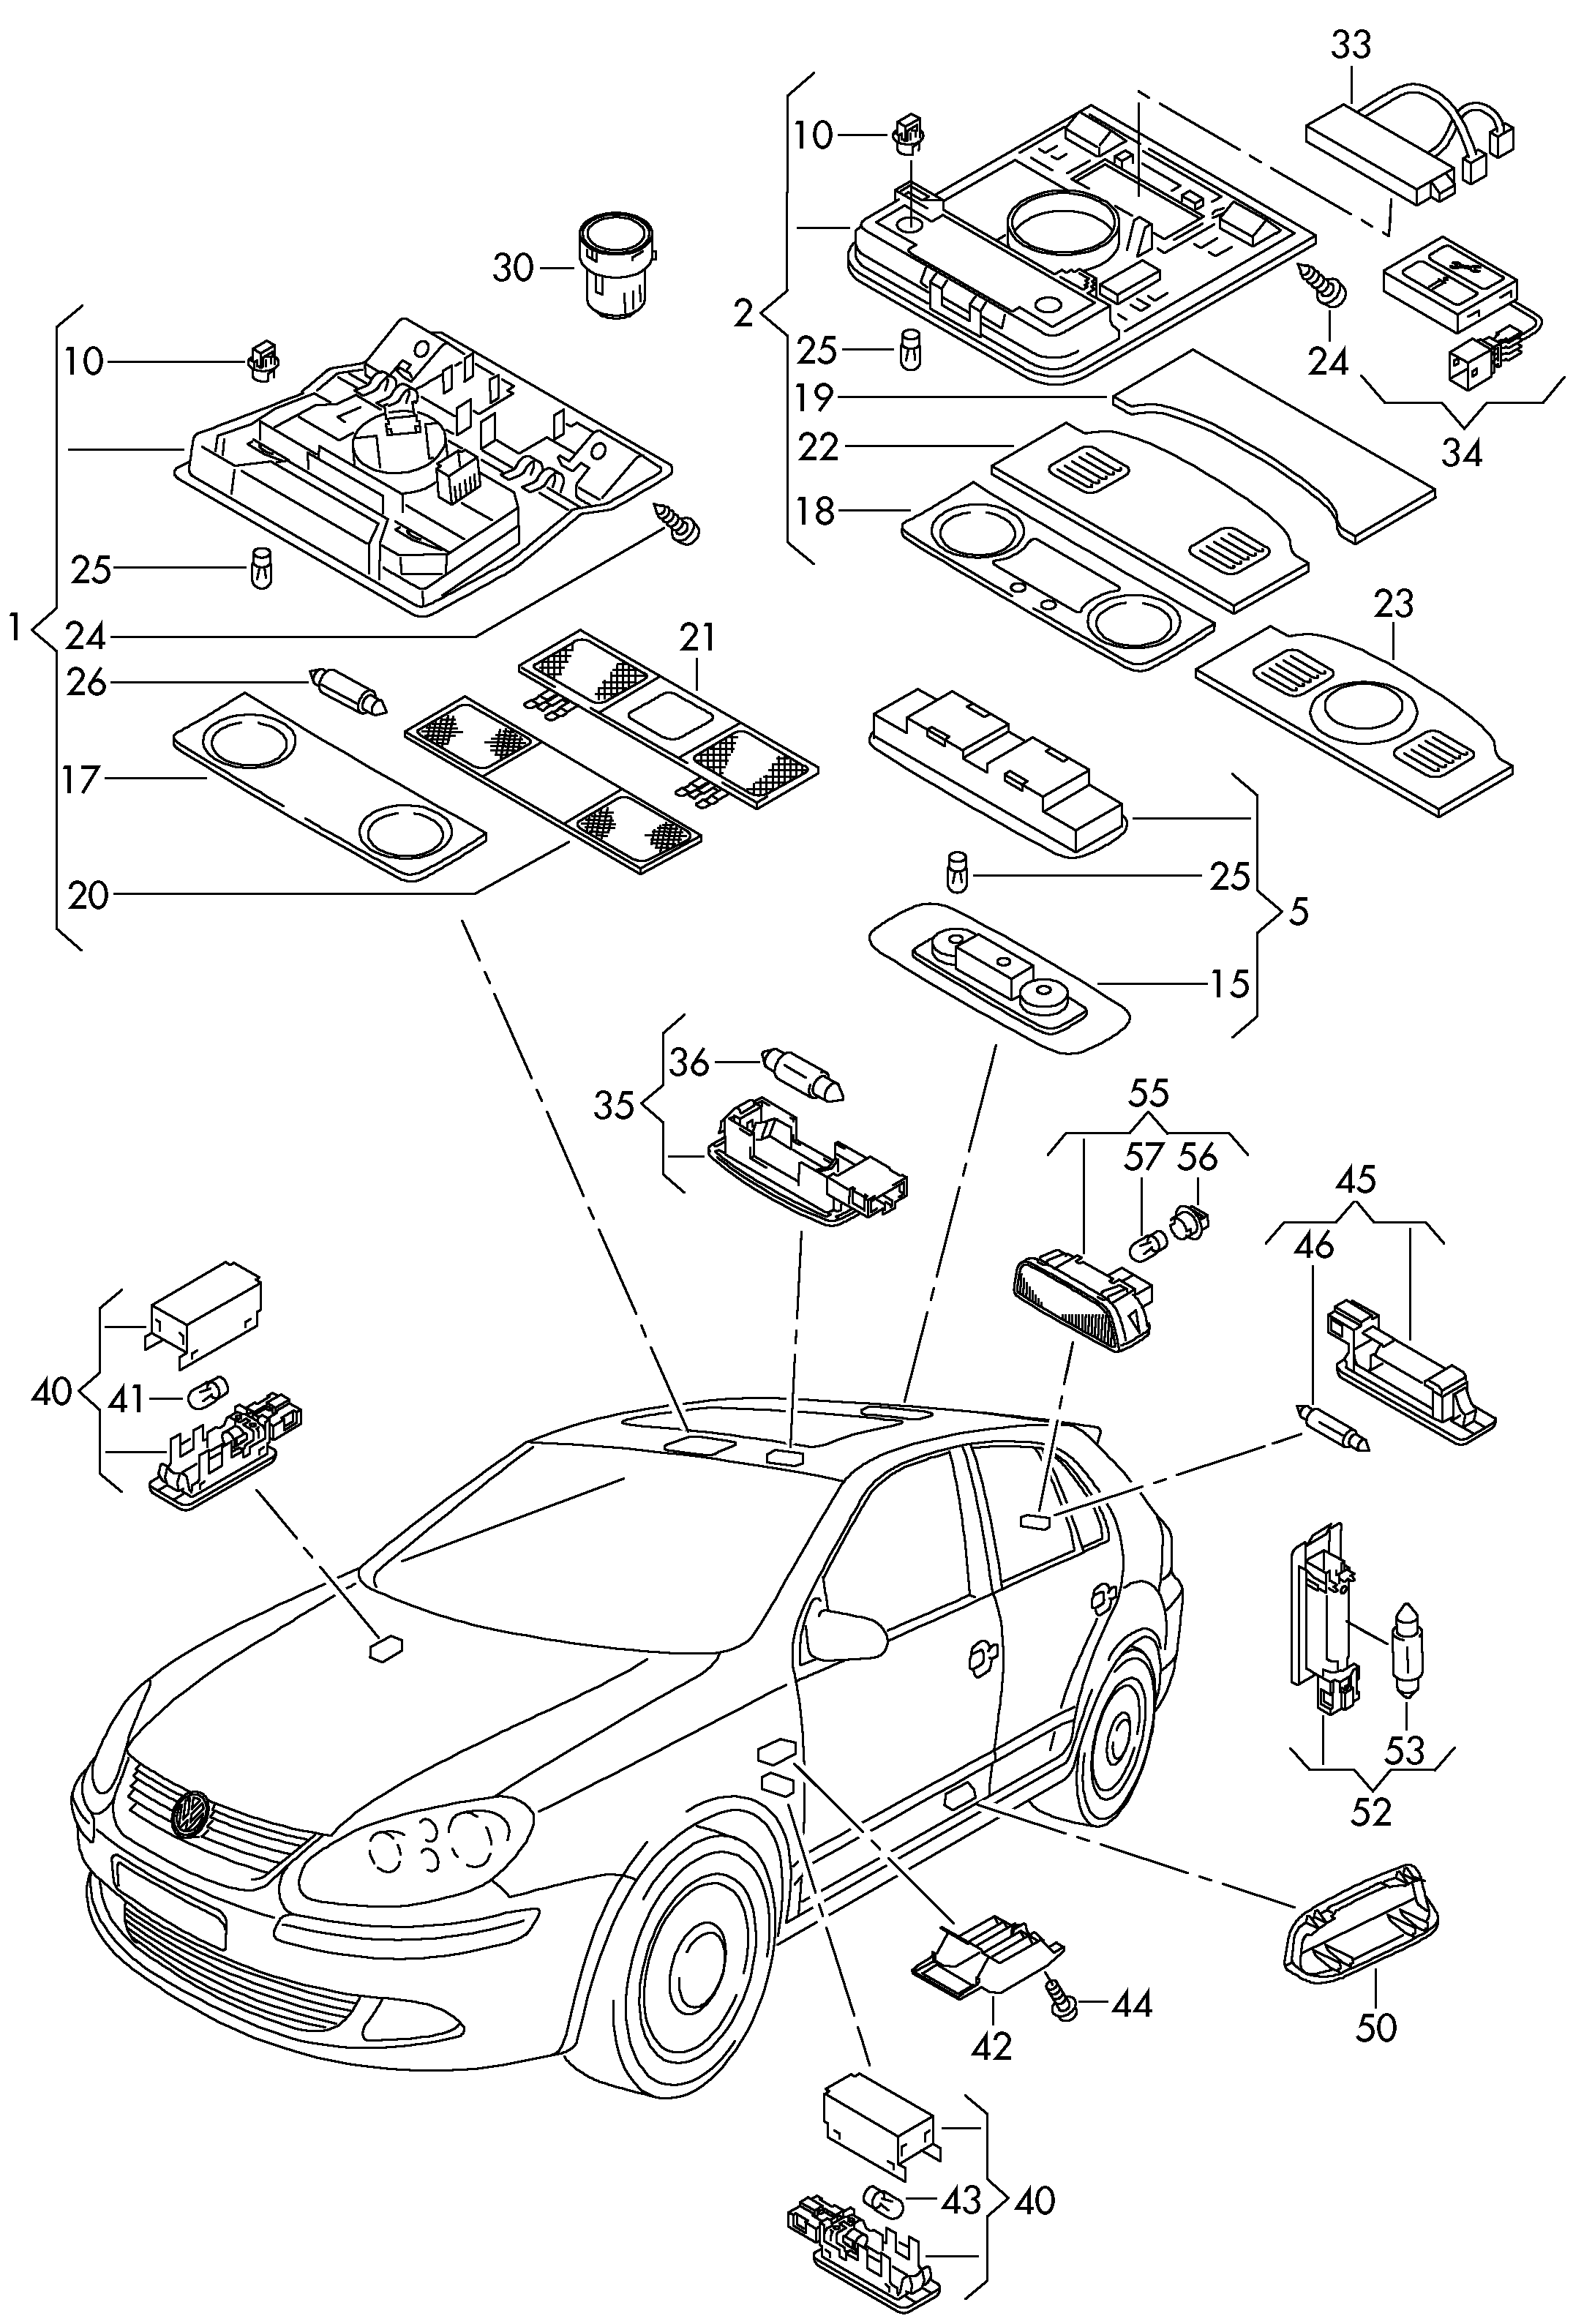 rear light reflector - Golf/Variant/4Motion(GOLF)  